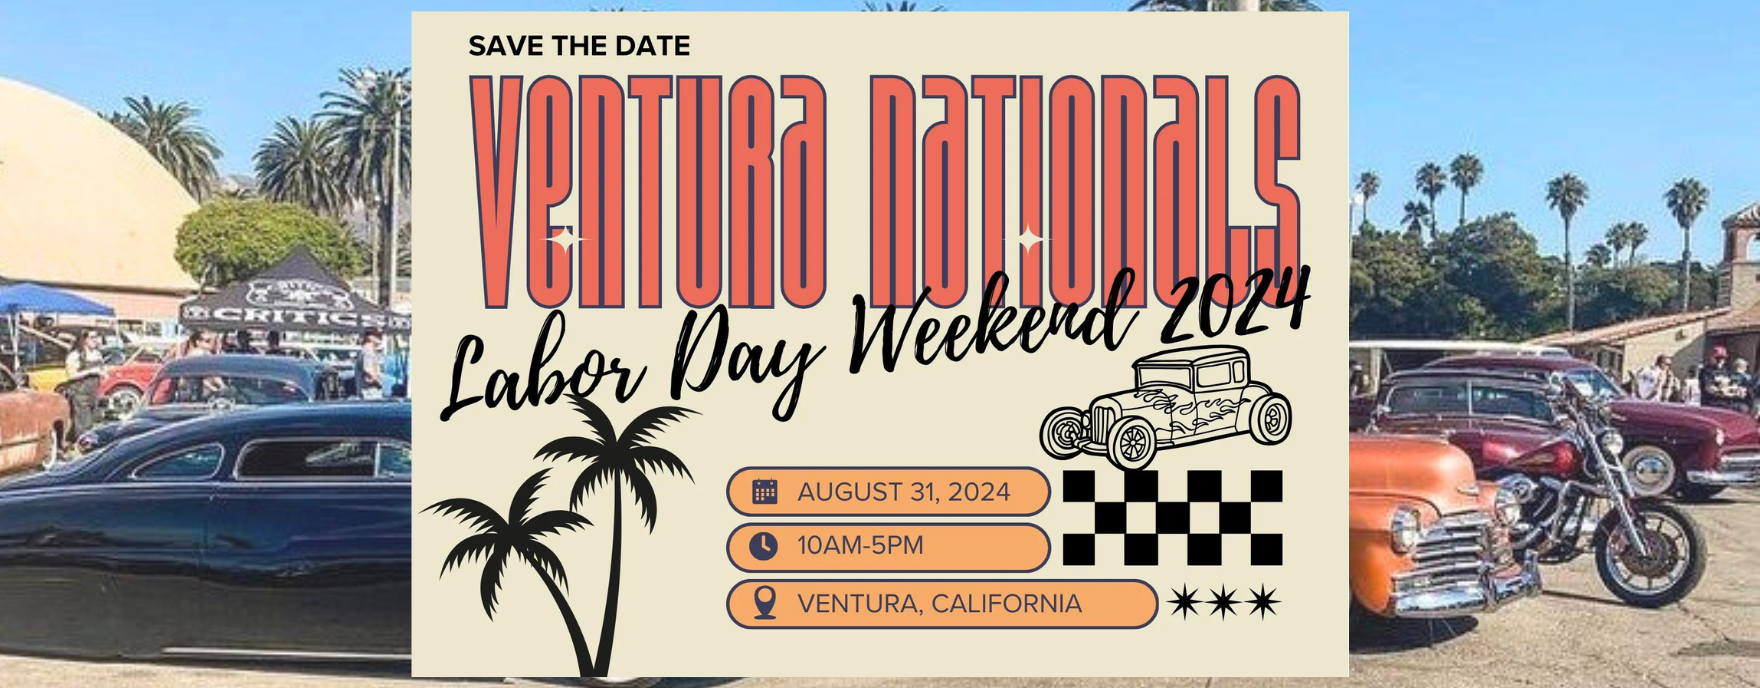 Ventura Nationals Hot Rod Car Show